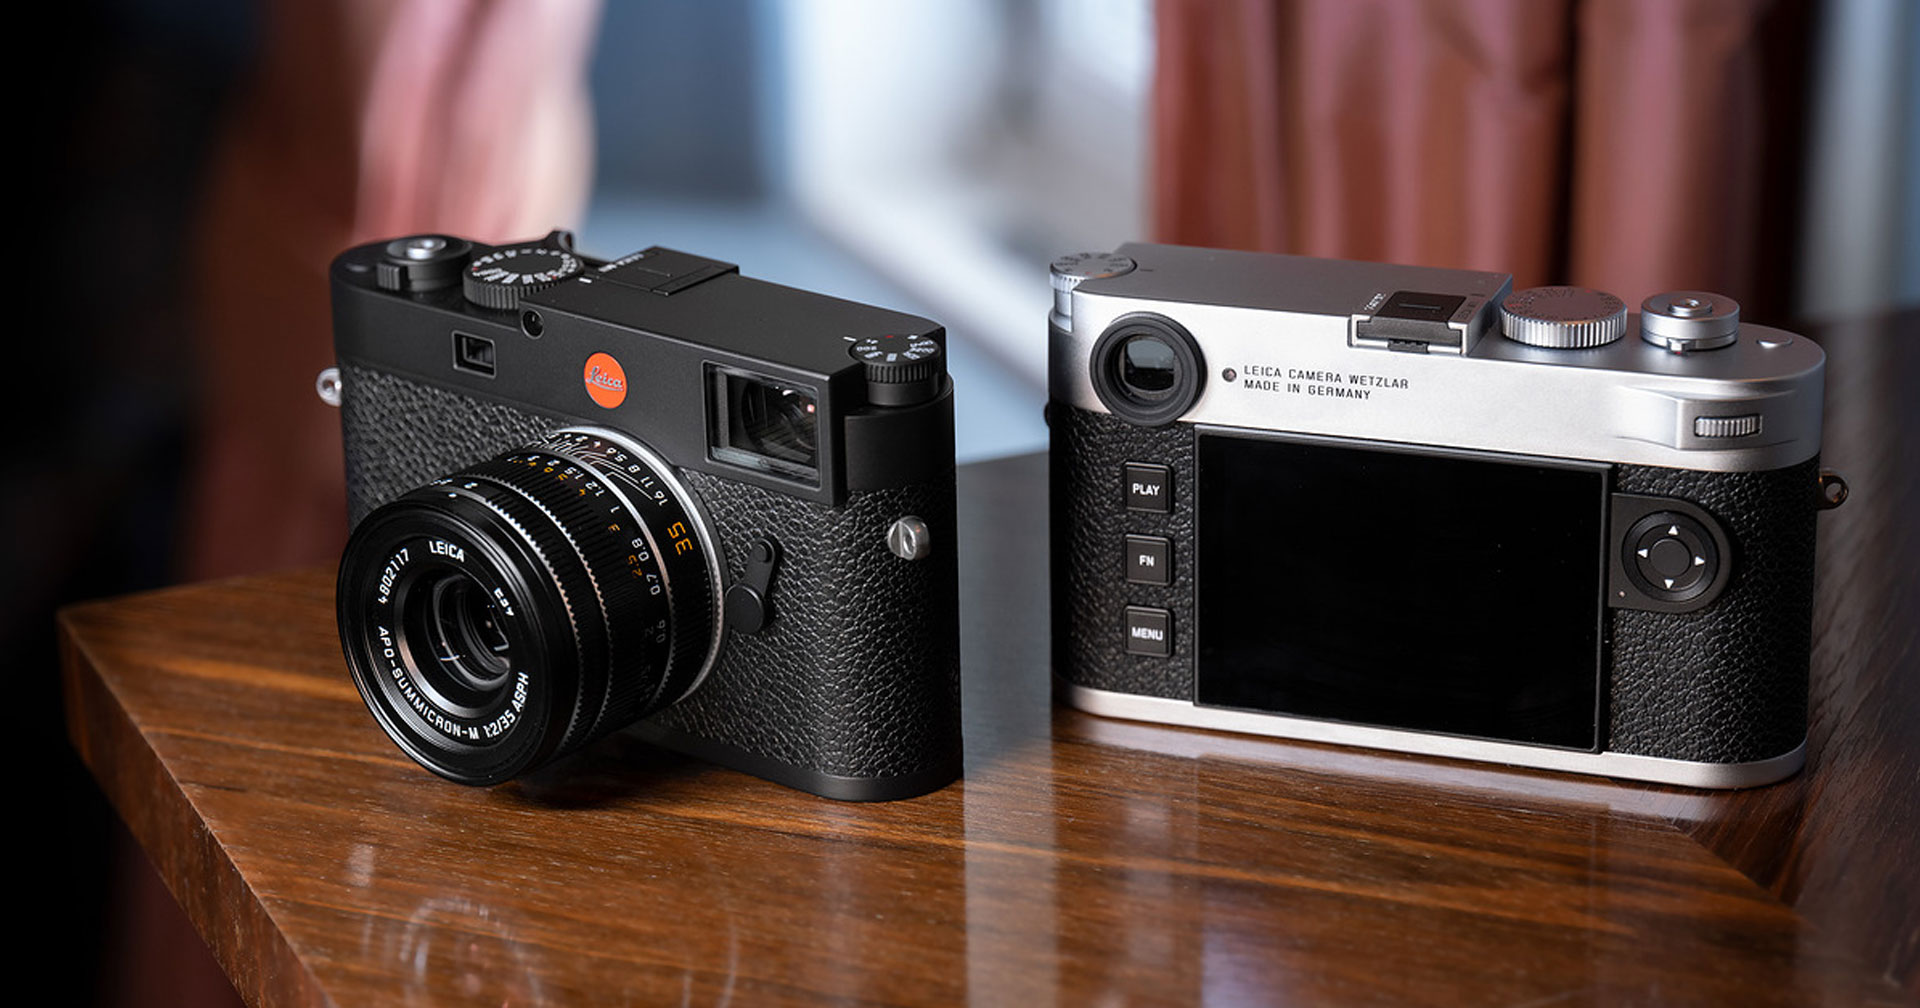 เปิดตัว Leica M11 กล้อง rangefinder หรู ความละเอียด 60MP ราคา 300,000 บาท!